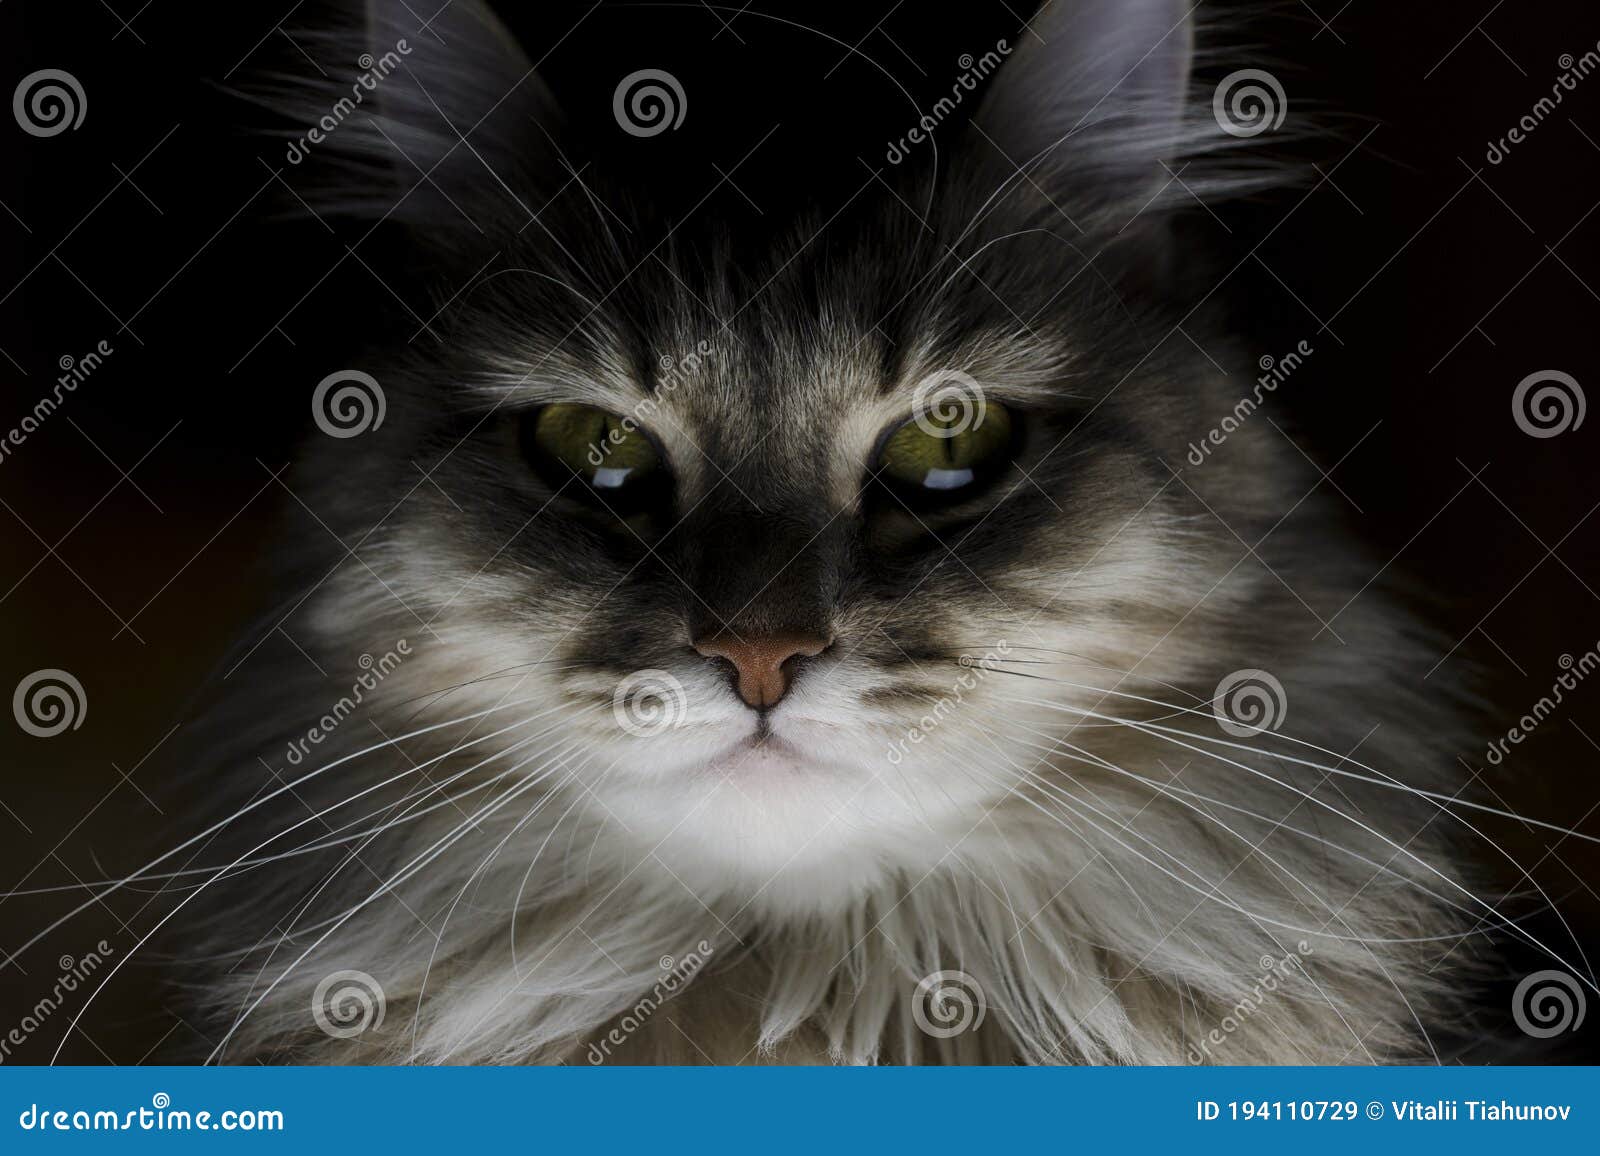 Sinistere Portret Van Een Kattenzuster Kattenoog Stock Afbeelding - Image  Of Sinister, Macro: 194110729